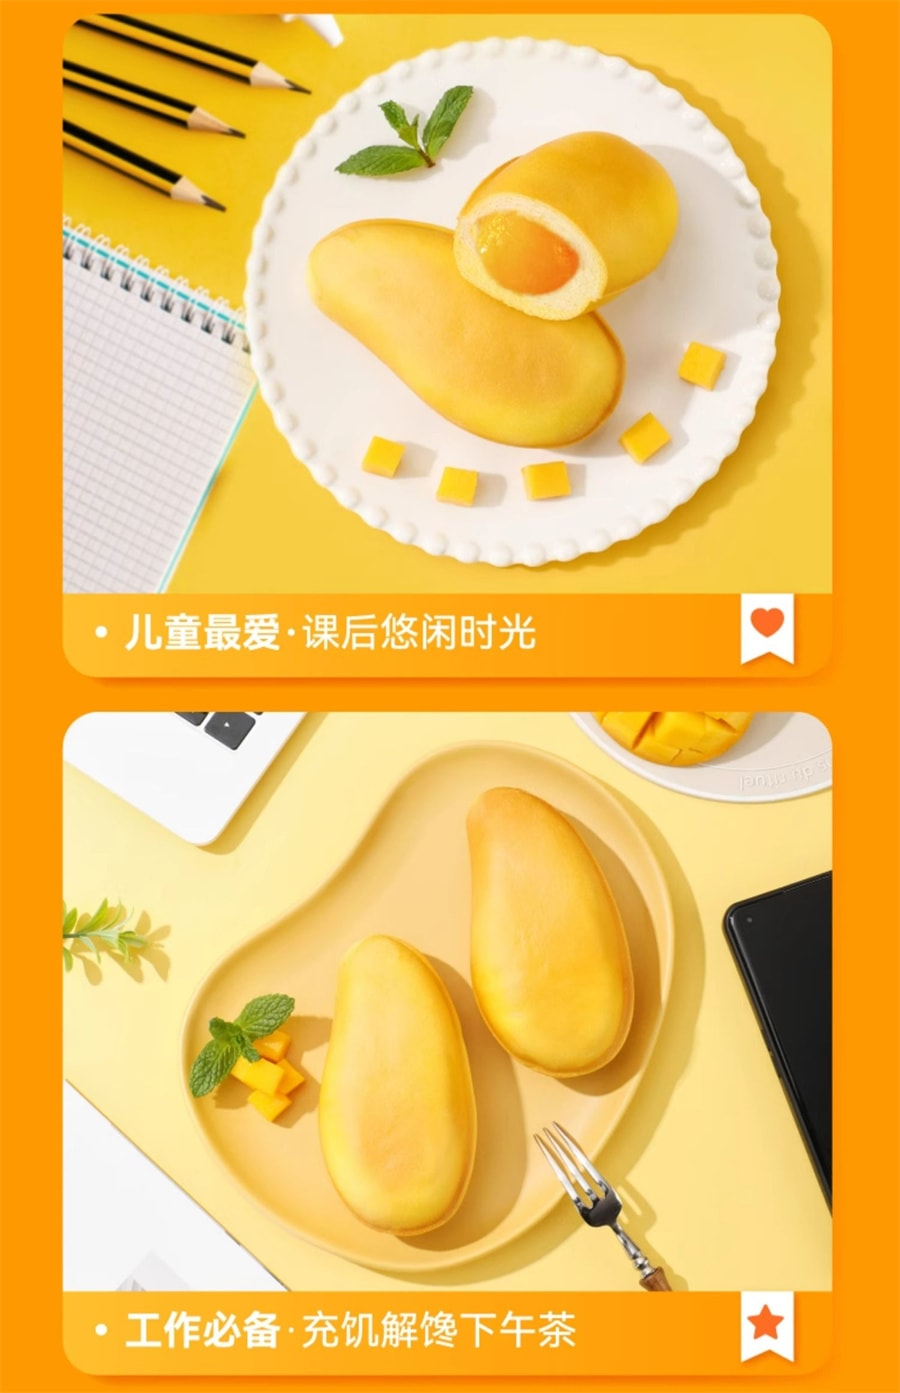 【中国直邮】a1零食研究所 芒果面包营养早餐网红糕点心办公室下午茶355g/箱